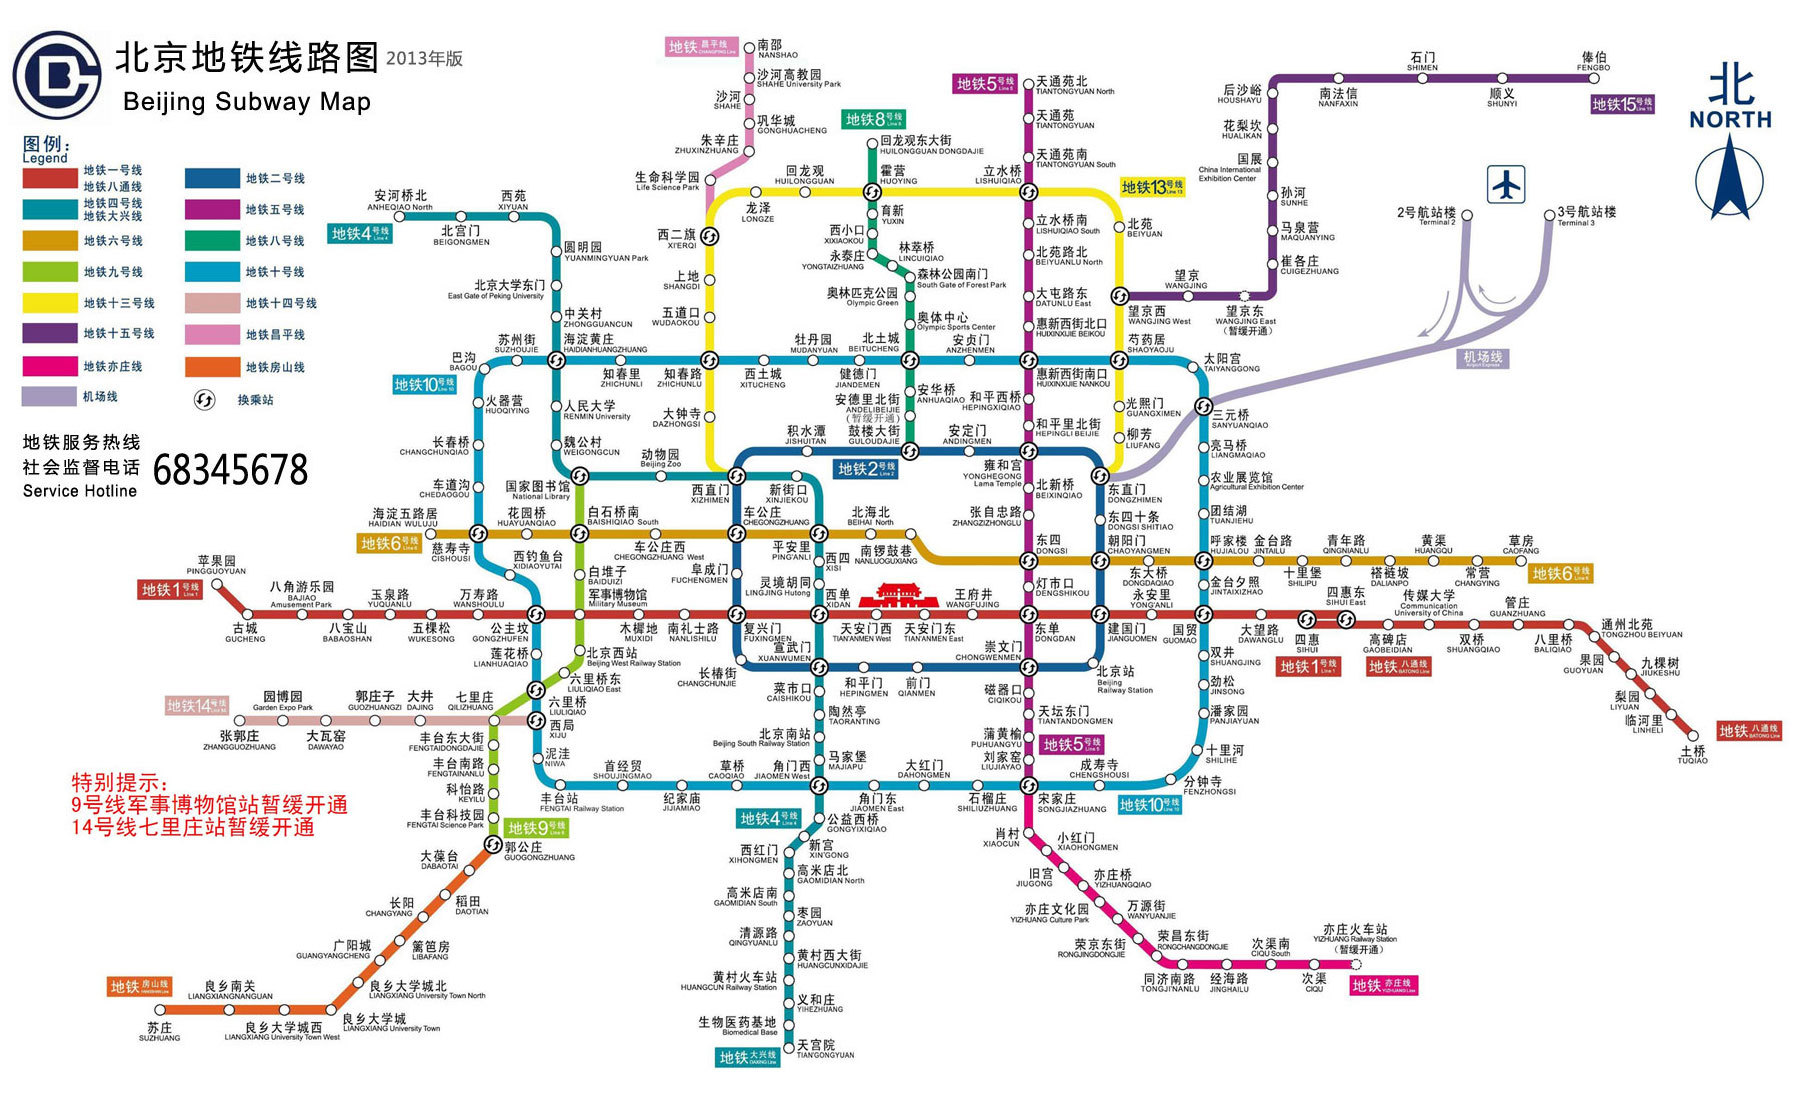 北京地铁目前运营多少条线有多少里程？远期规划1524公里？